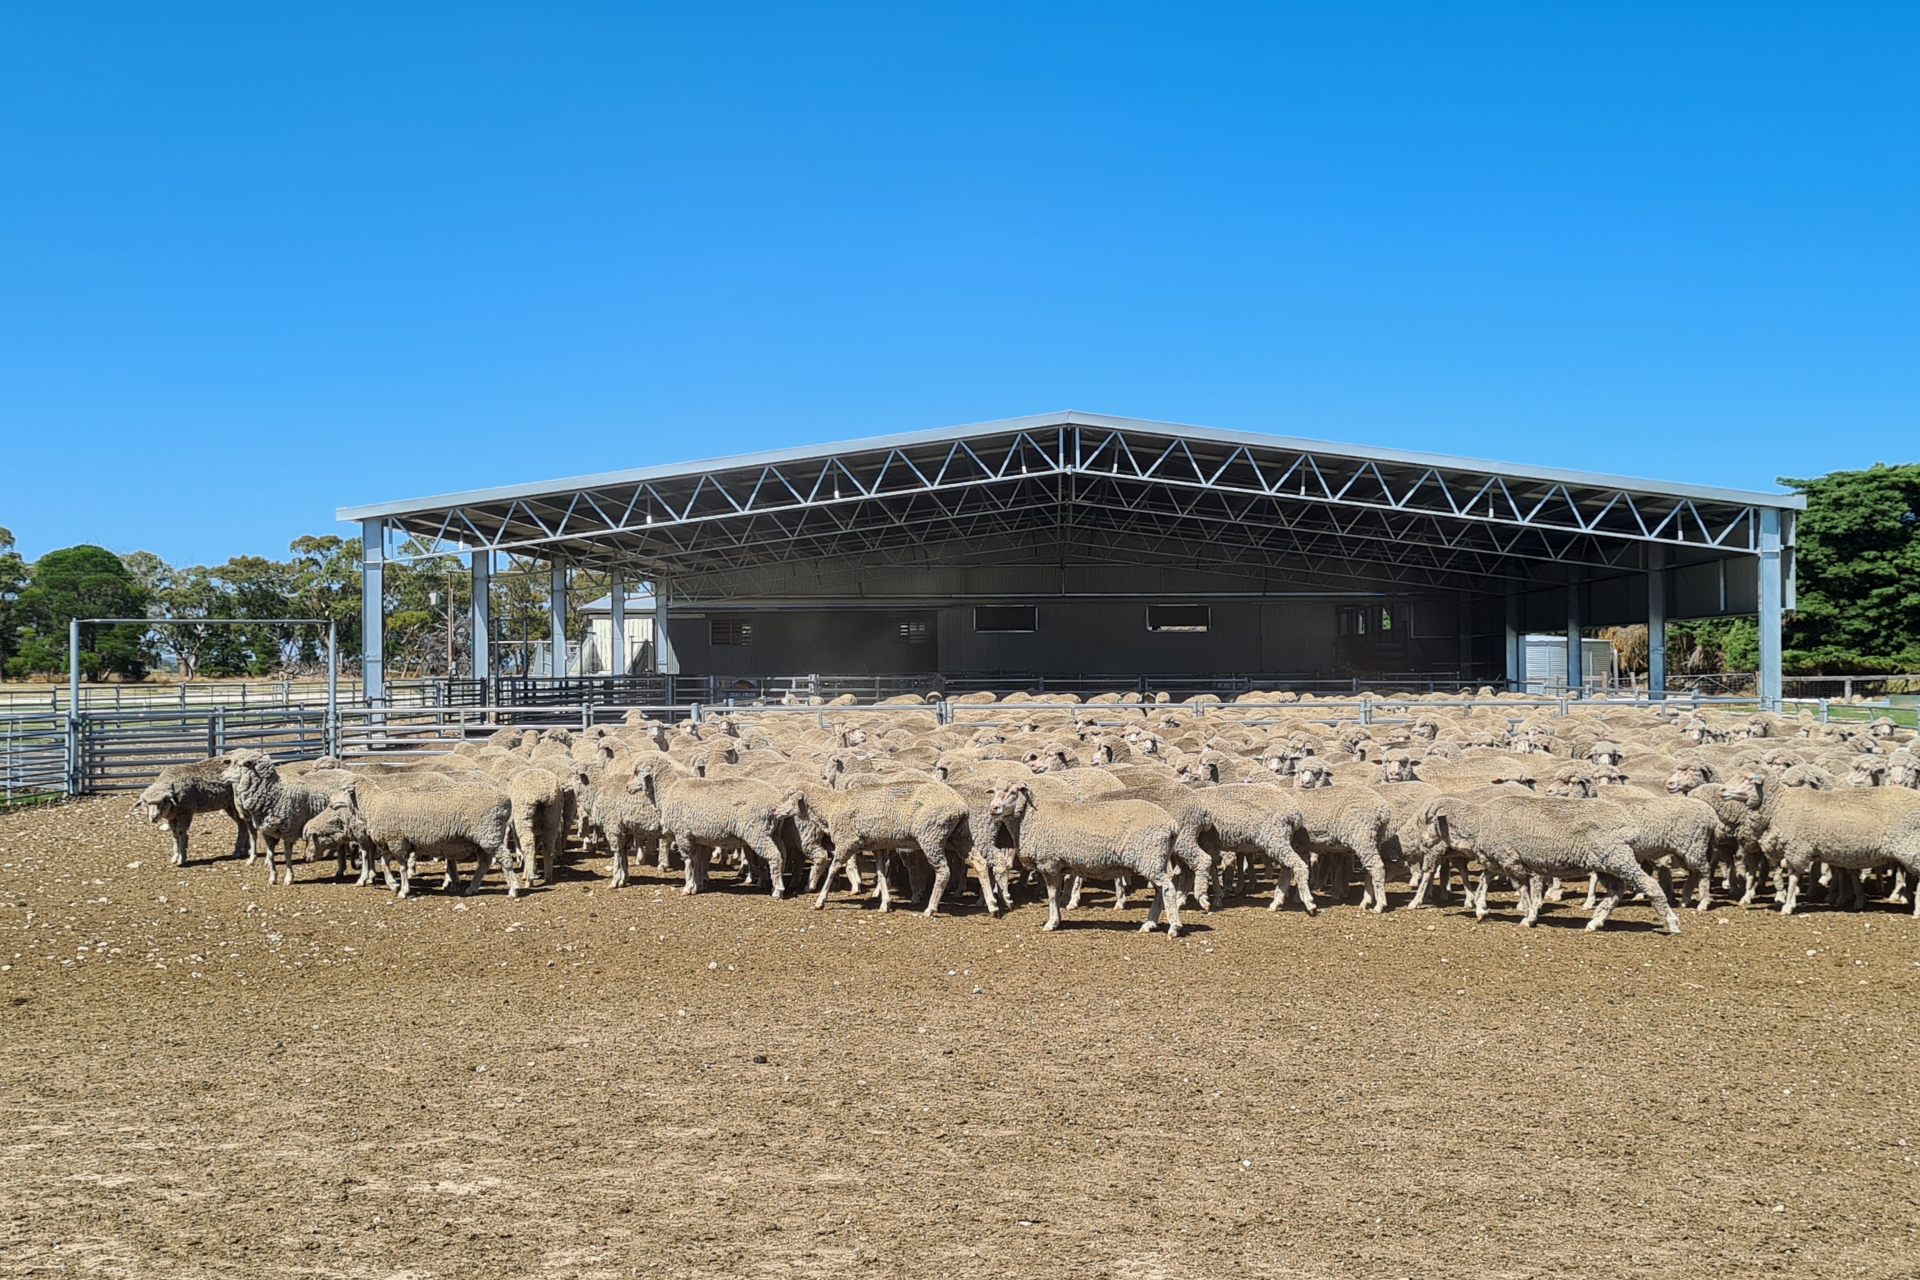 A 31m x 27m x 4.2m sheep yard cover at Marcollat SA